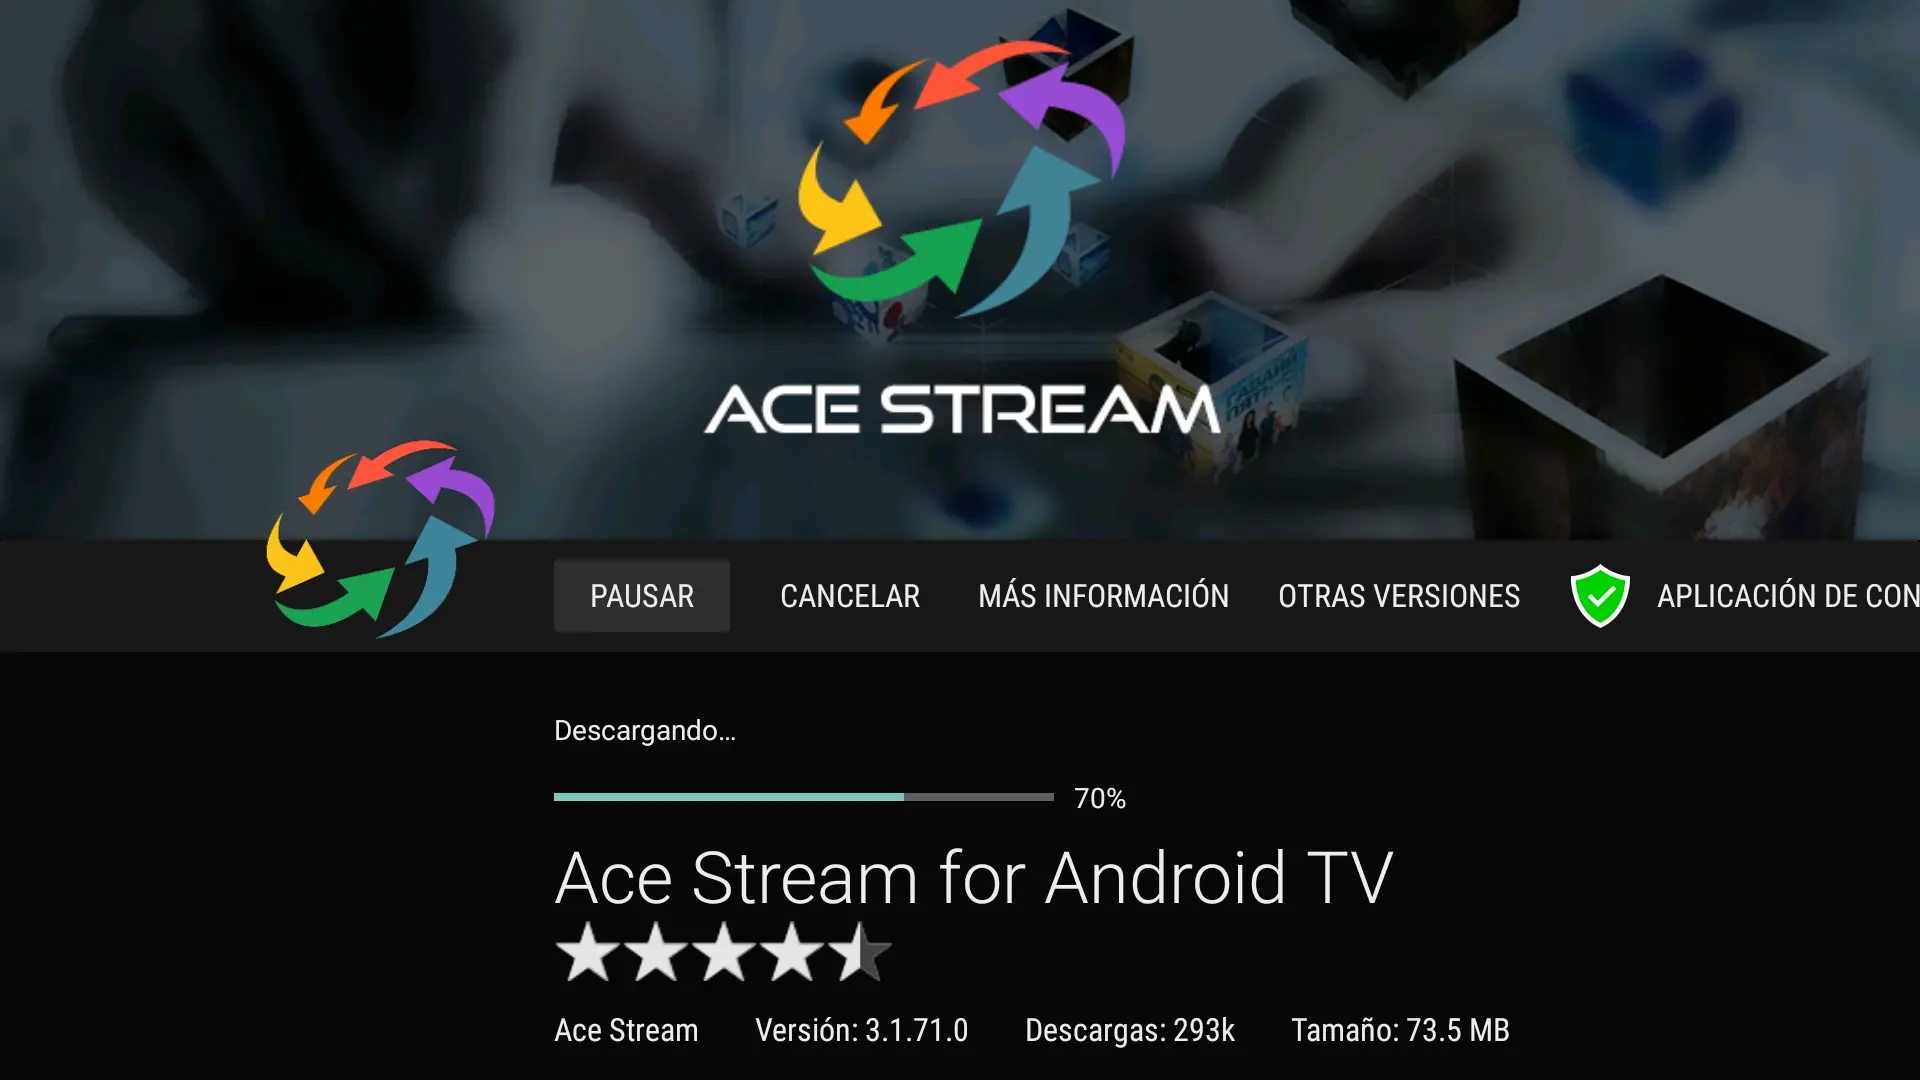 14 Proceso de descarga de la app ACE STREAM for Android TV iniciada desde Aptoide TV para el Fire TV Stick